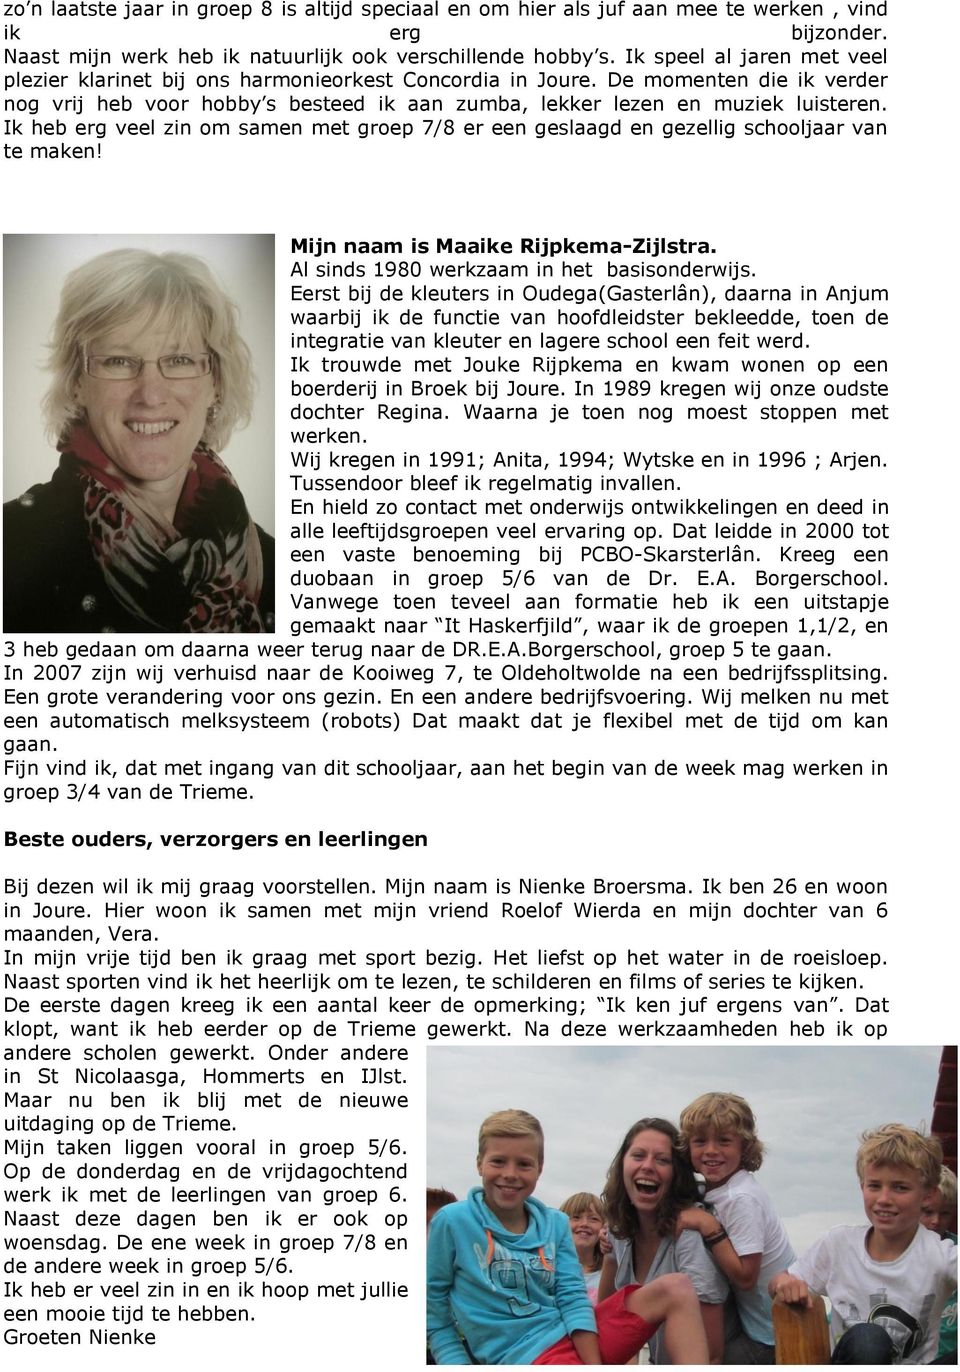 Ik heb erg veel zin om samen met groep 7/8 er een geslaagd en gezellig schooljaar van te maken! Mijn naam is Maaike Rijpkema-Zijlstra. Al sinds 1980 werkzaam in het basisonderwijs.